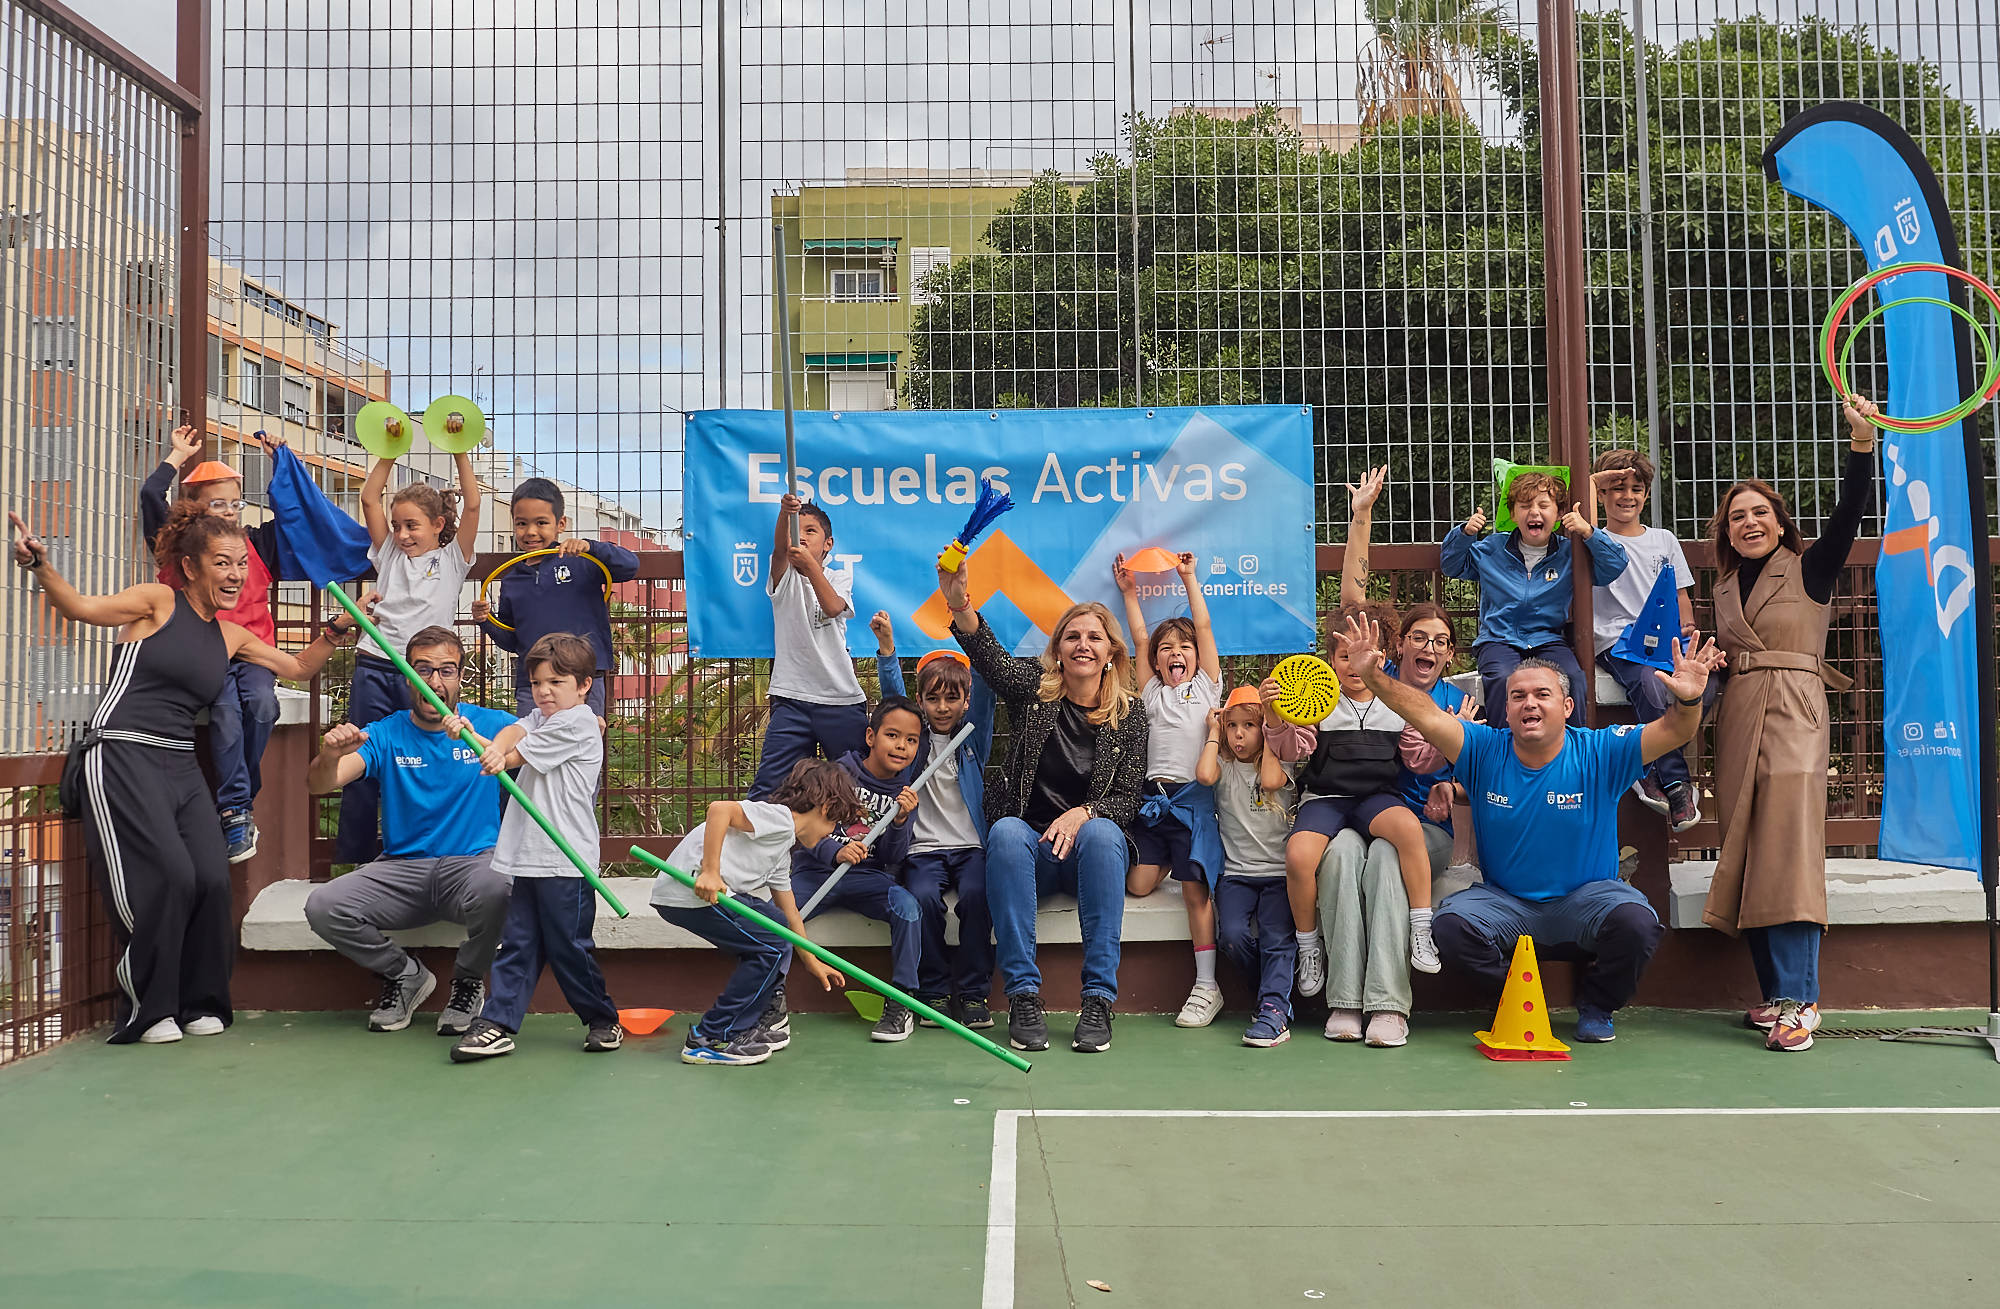 El Cabildo promueve la actividad físico-deportiva en 75 centros educativos de la isla a través del programa Escuelas Activas